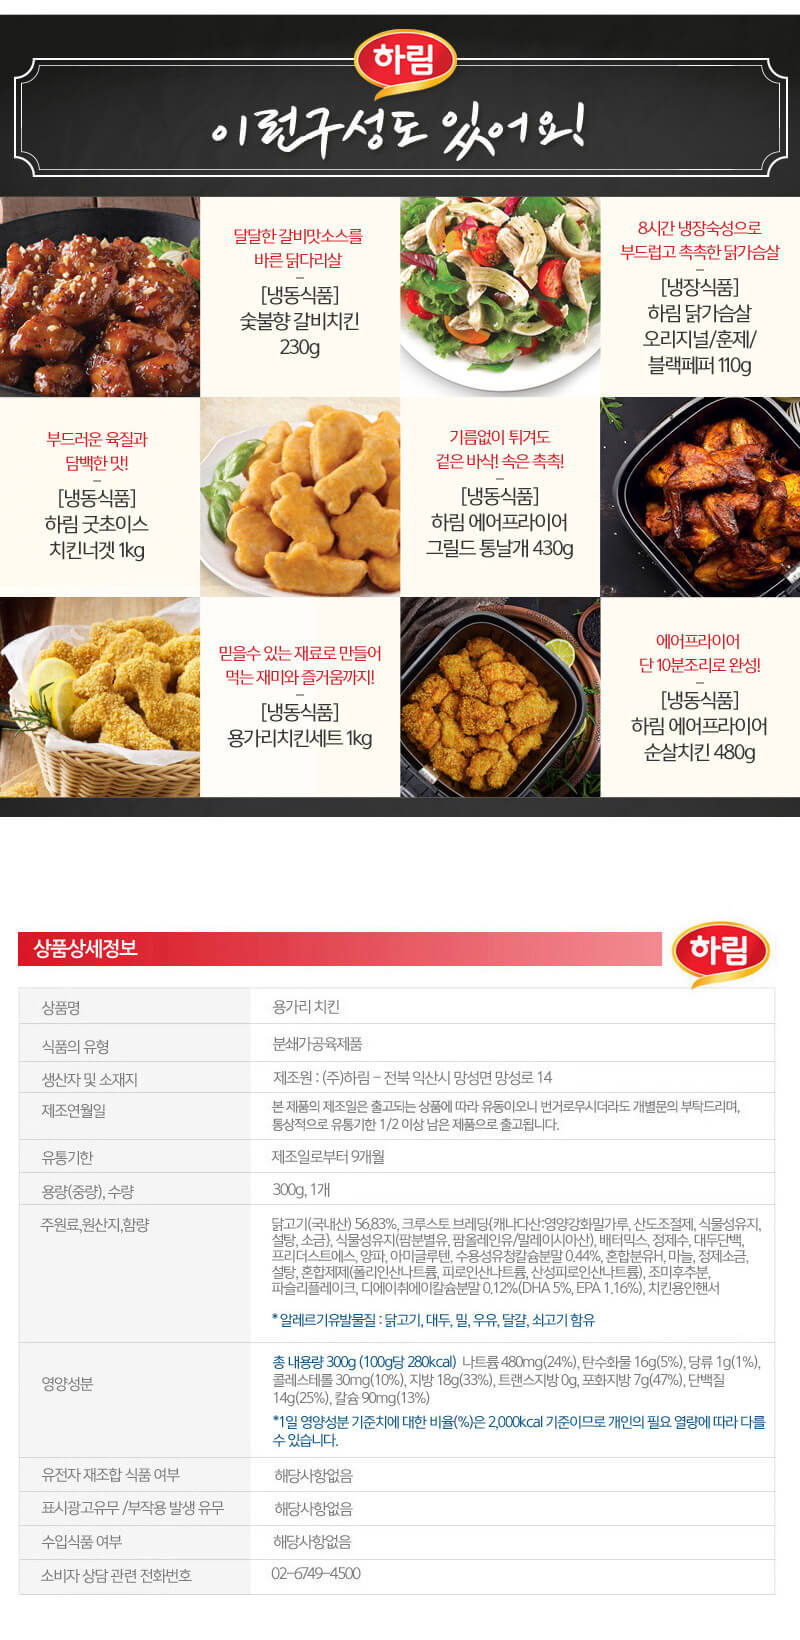 韓國食品-[Harim] Yonggary Chicken 560g